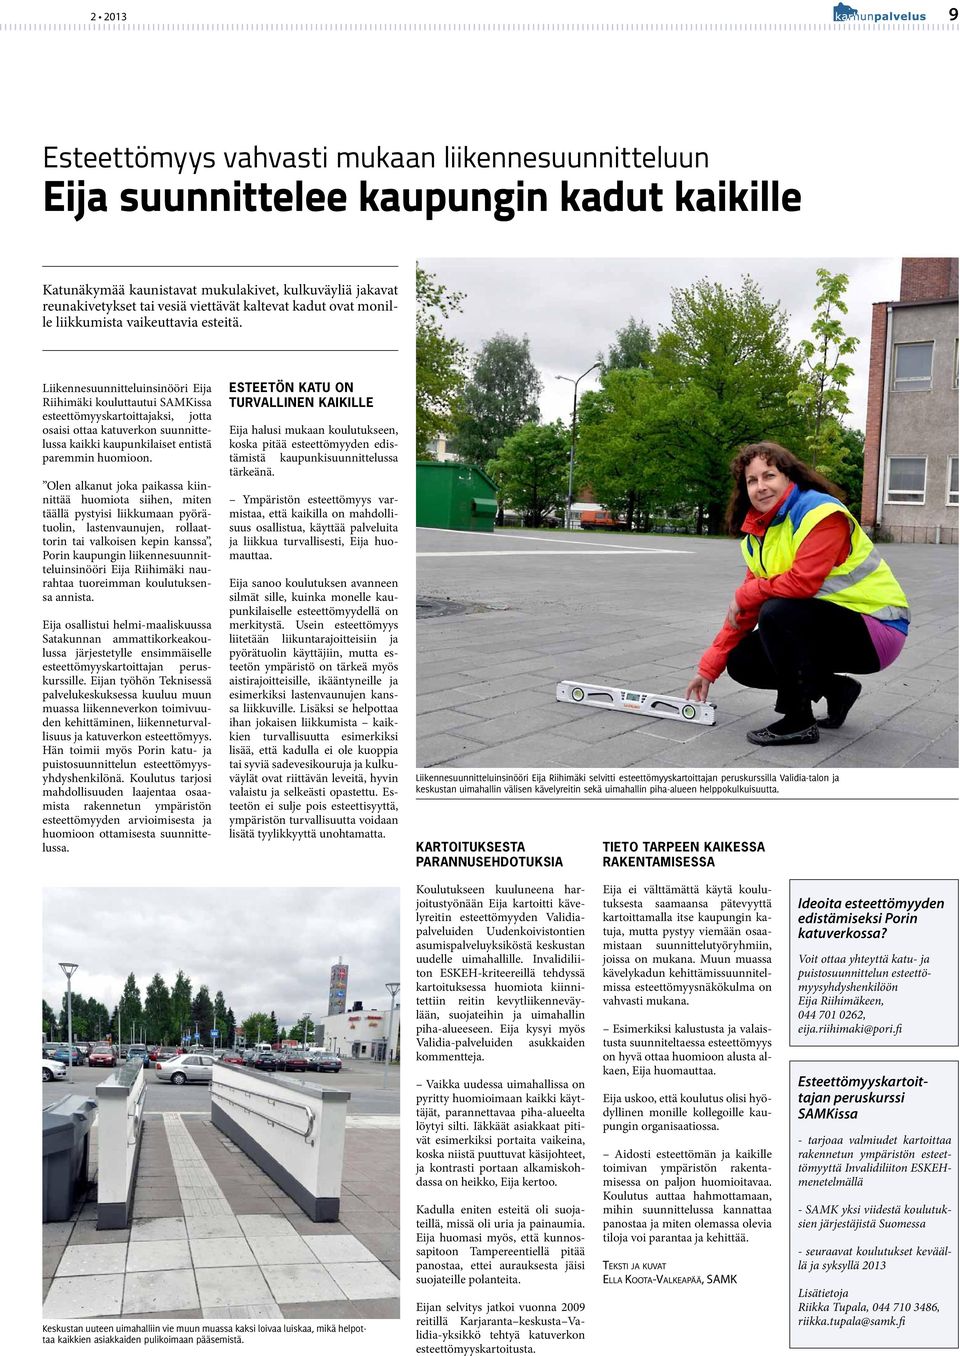 Liikennesuunnitteluinsinööri Eija Riihimäki kouluttautui SAMKissa esteettömyyskartoittajaksi, jotta osaisi ottaa katuverkon suunnittelussa kaikki kaupunkilaiset entistä paremmin huomioon.